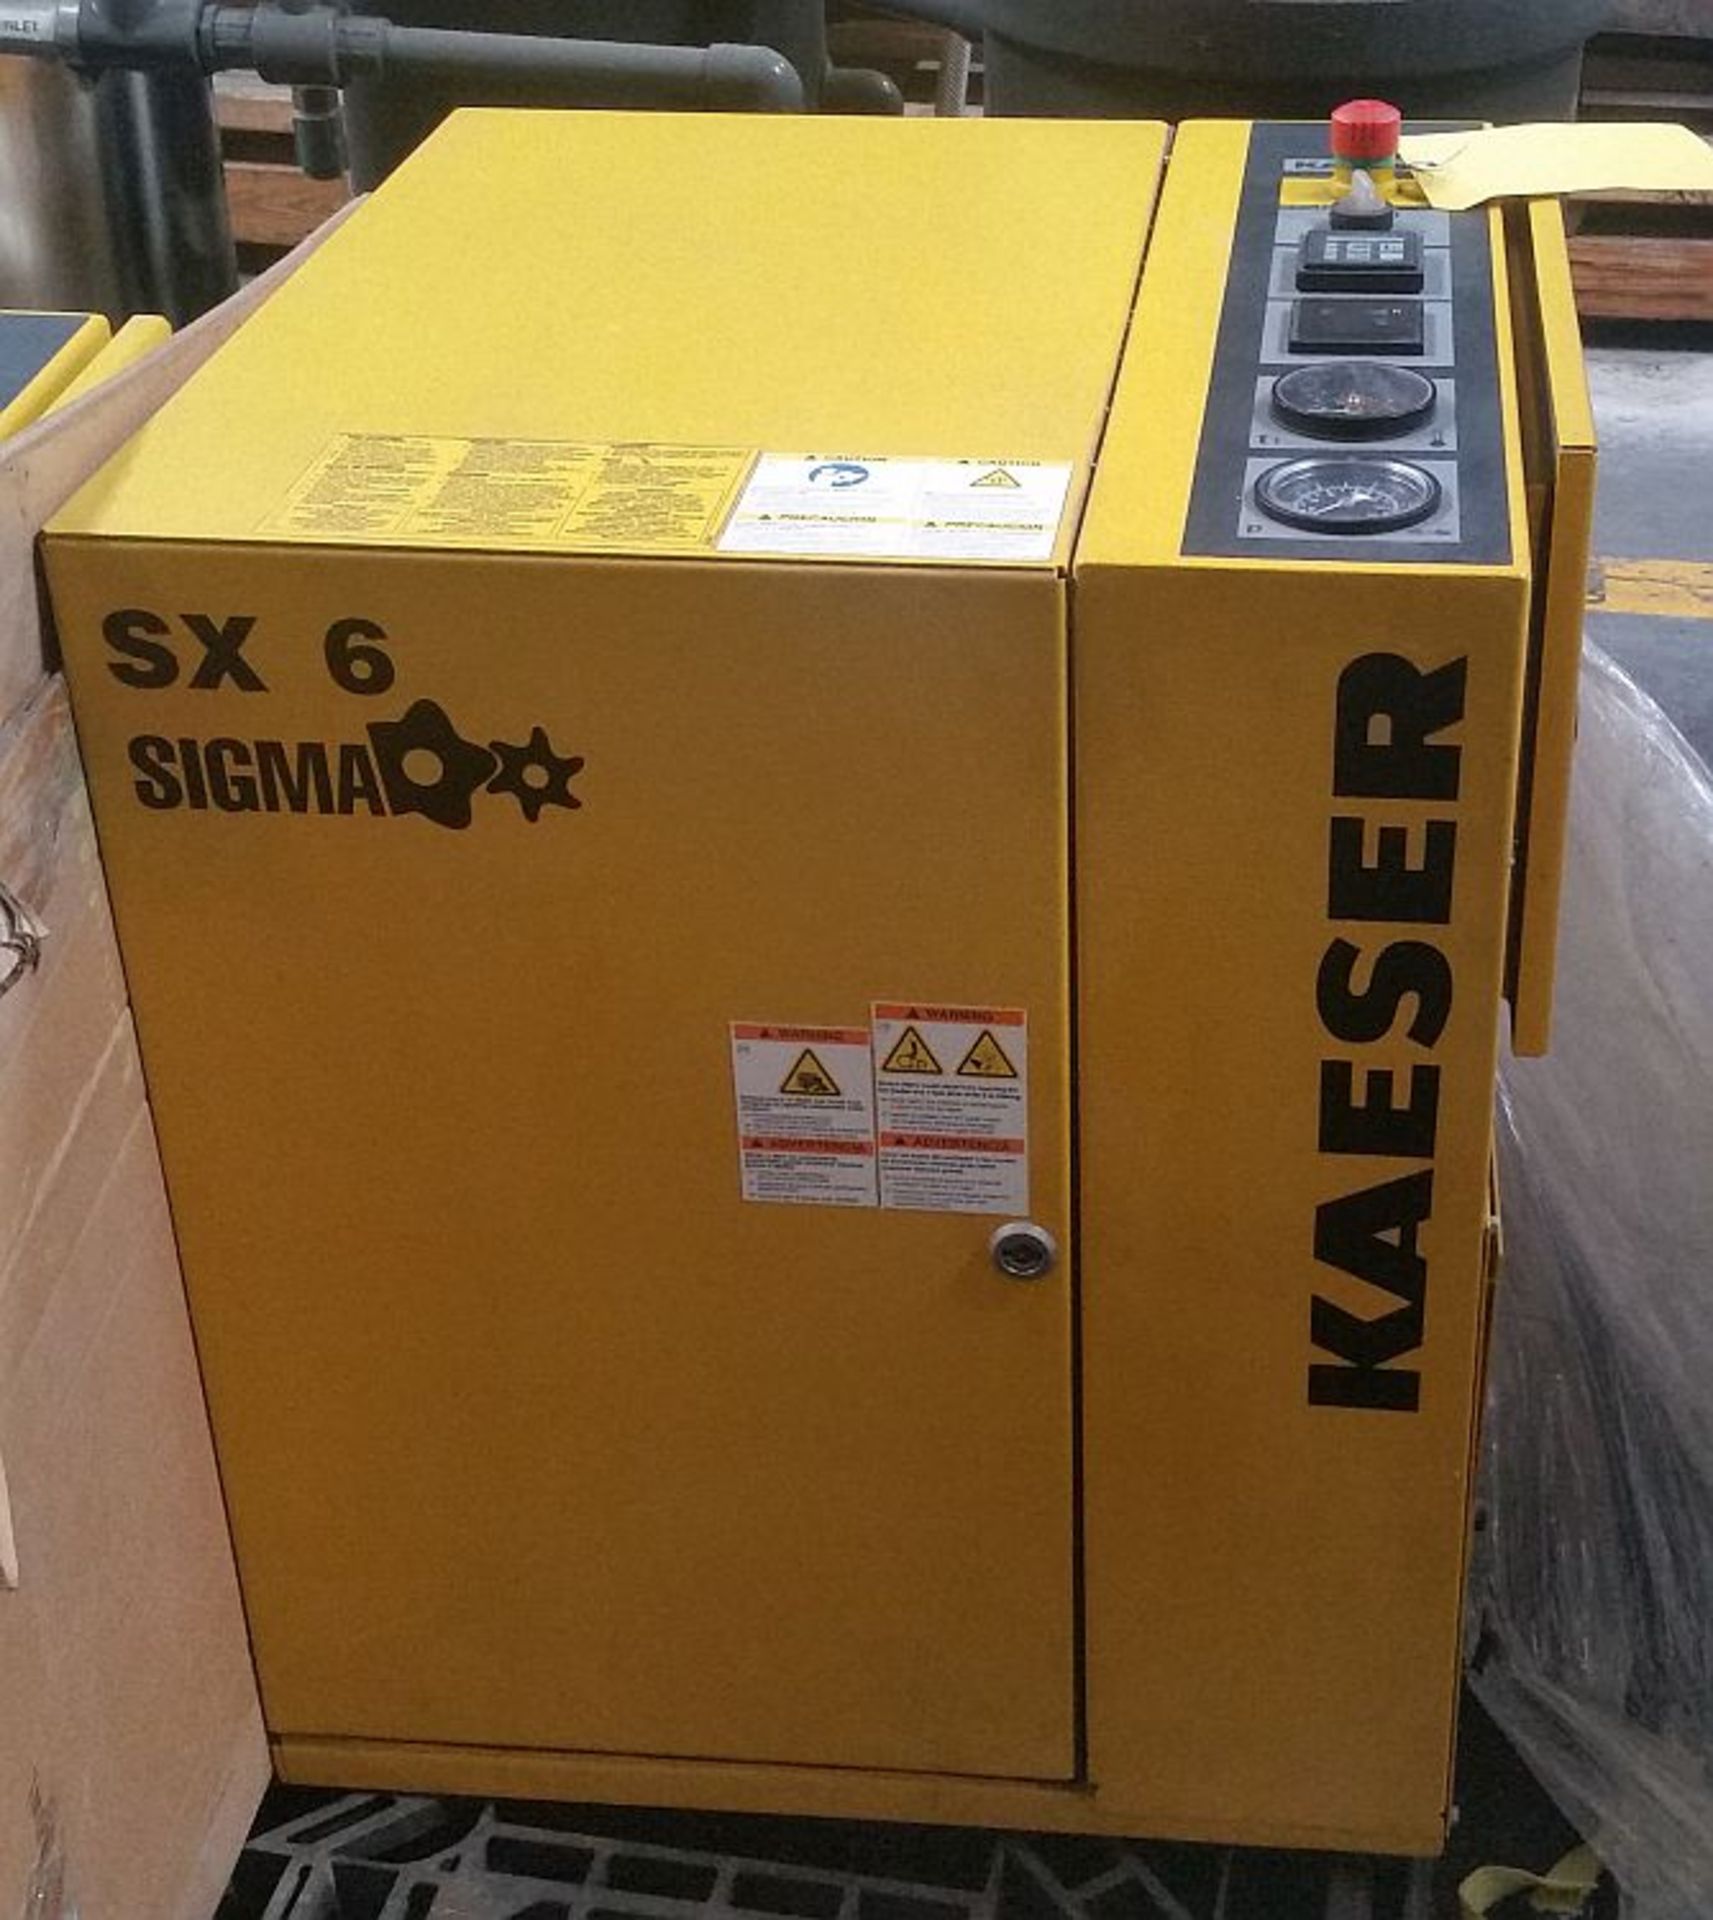 5 HP Kaeser SX 6 Rotary Screw Air Compressor, 110 PSI, s/n 1069, New 2012